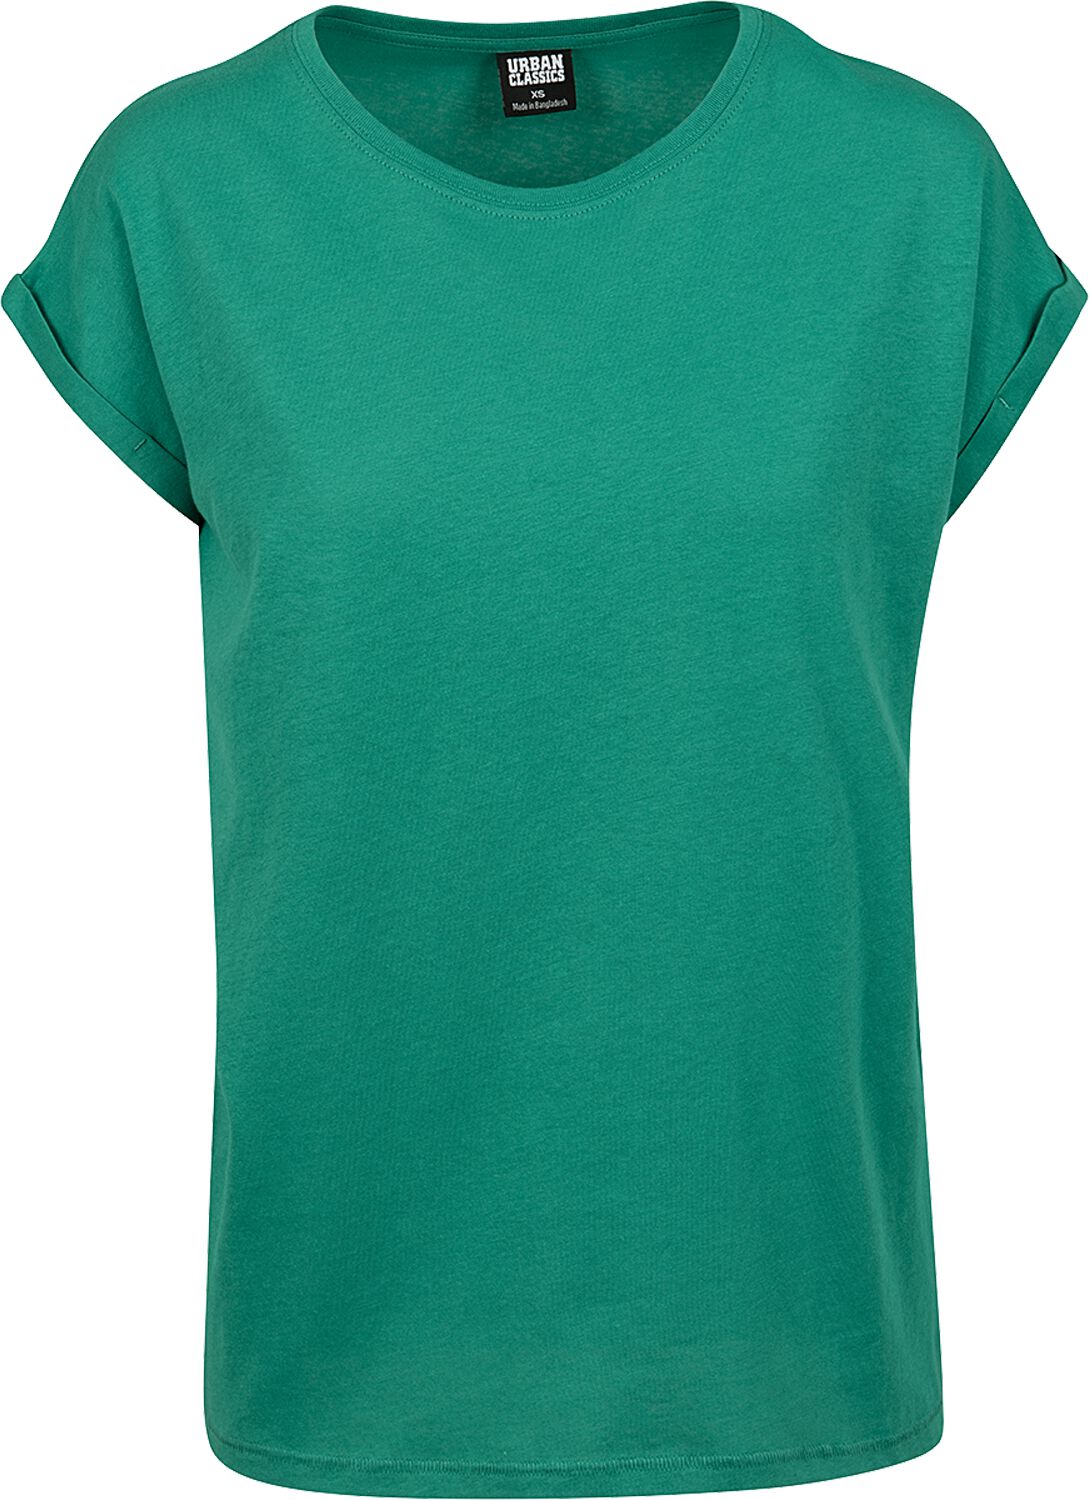 T-Shirt Manches courtes de Urban Classics - T-shirt Manches Larges Femme - XS - pour Femme - vert